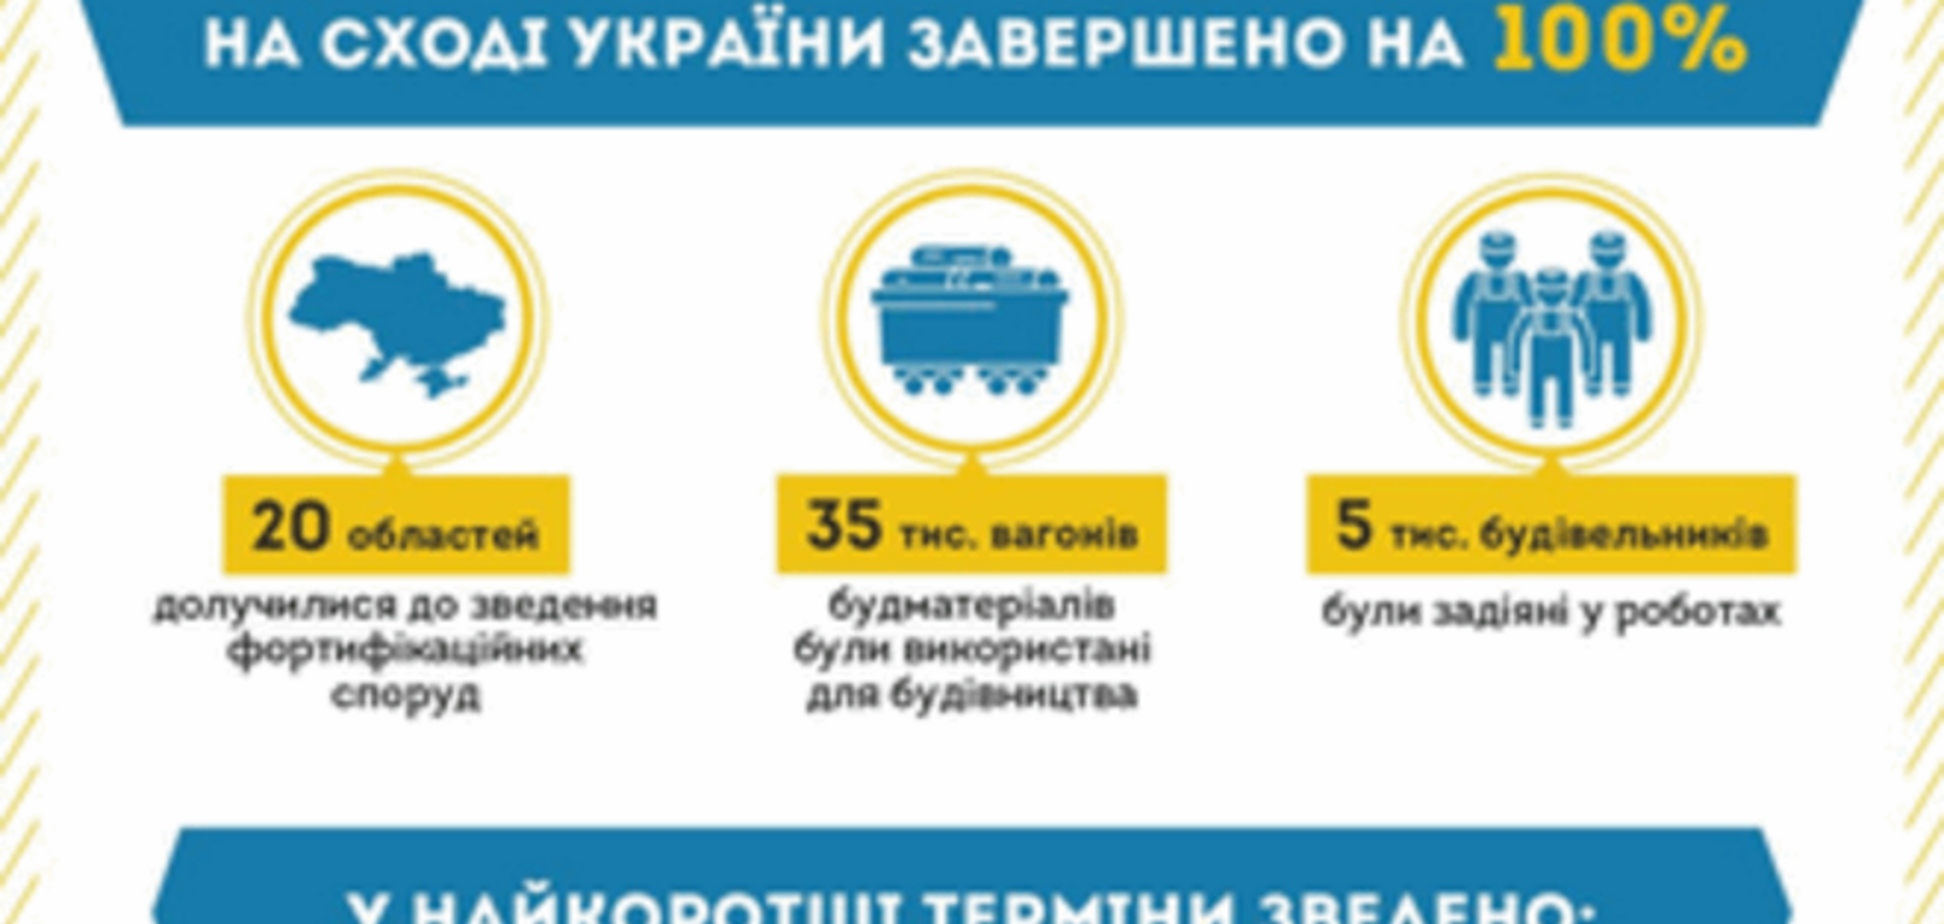 'Стена' на Донбассе готова на 100%: опубликована инфографика